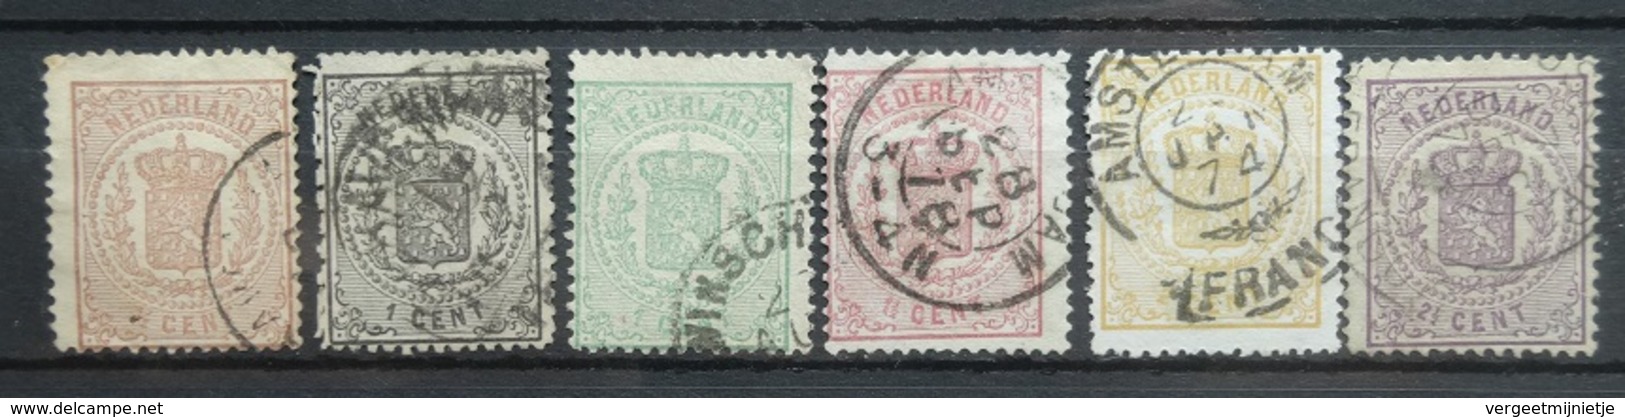 NEDERLAND  1869     Nr. 13 - 18    Gestempeld  / Verschillende Tandingen    CW 310,00 - Gebraucht